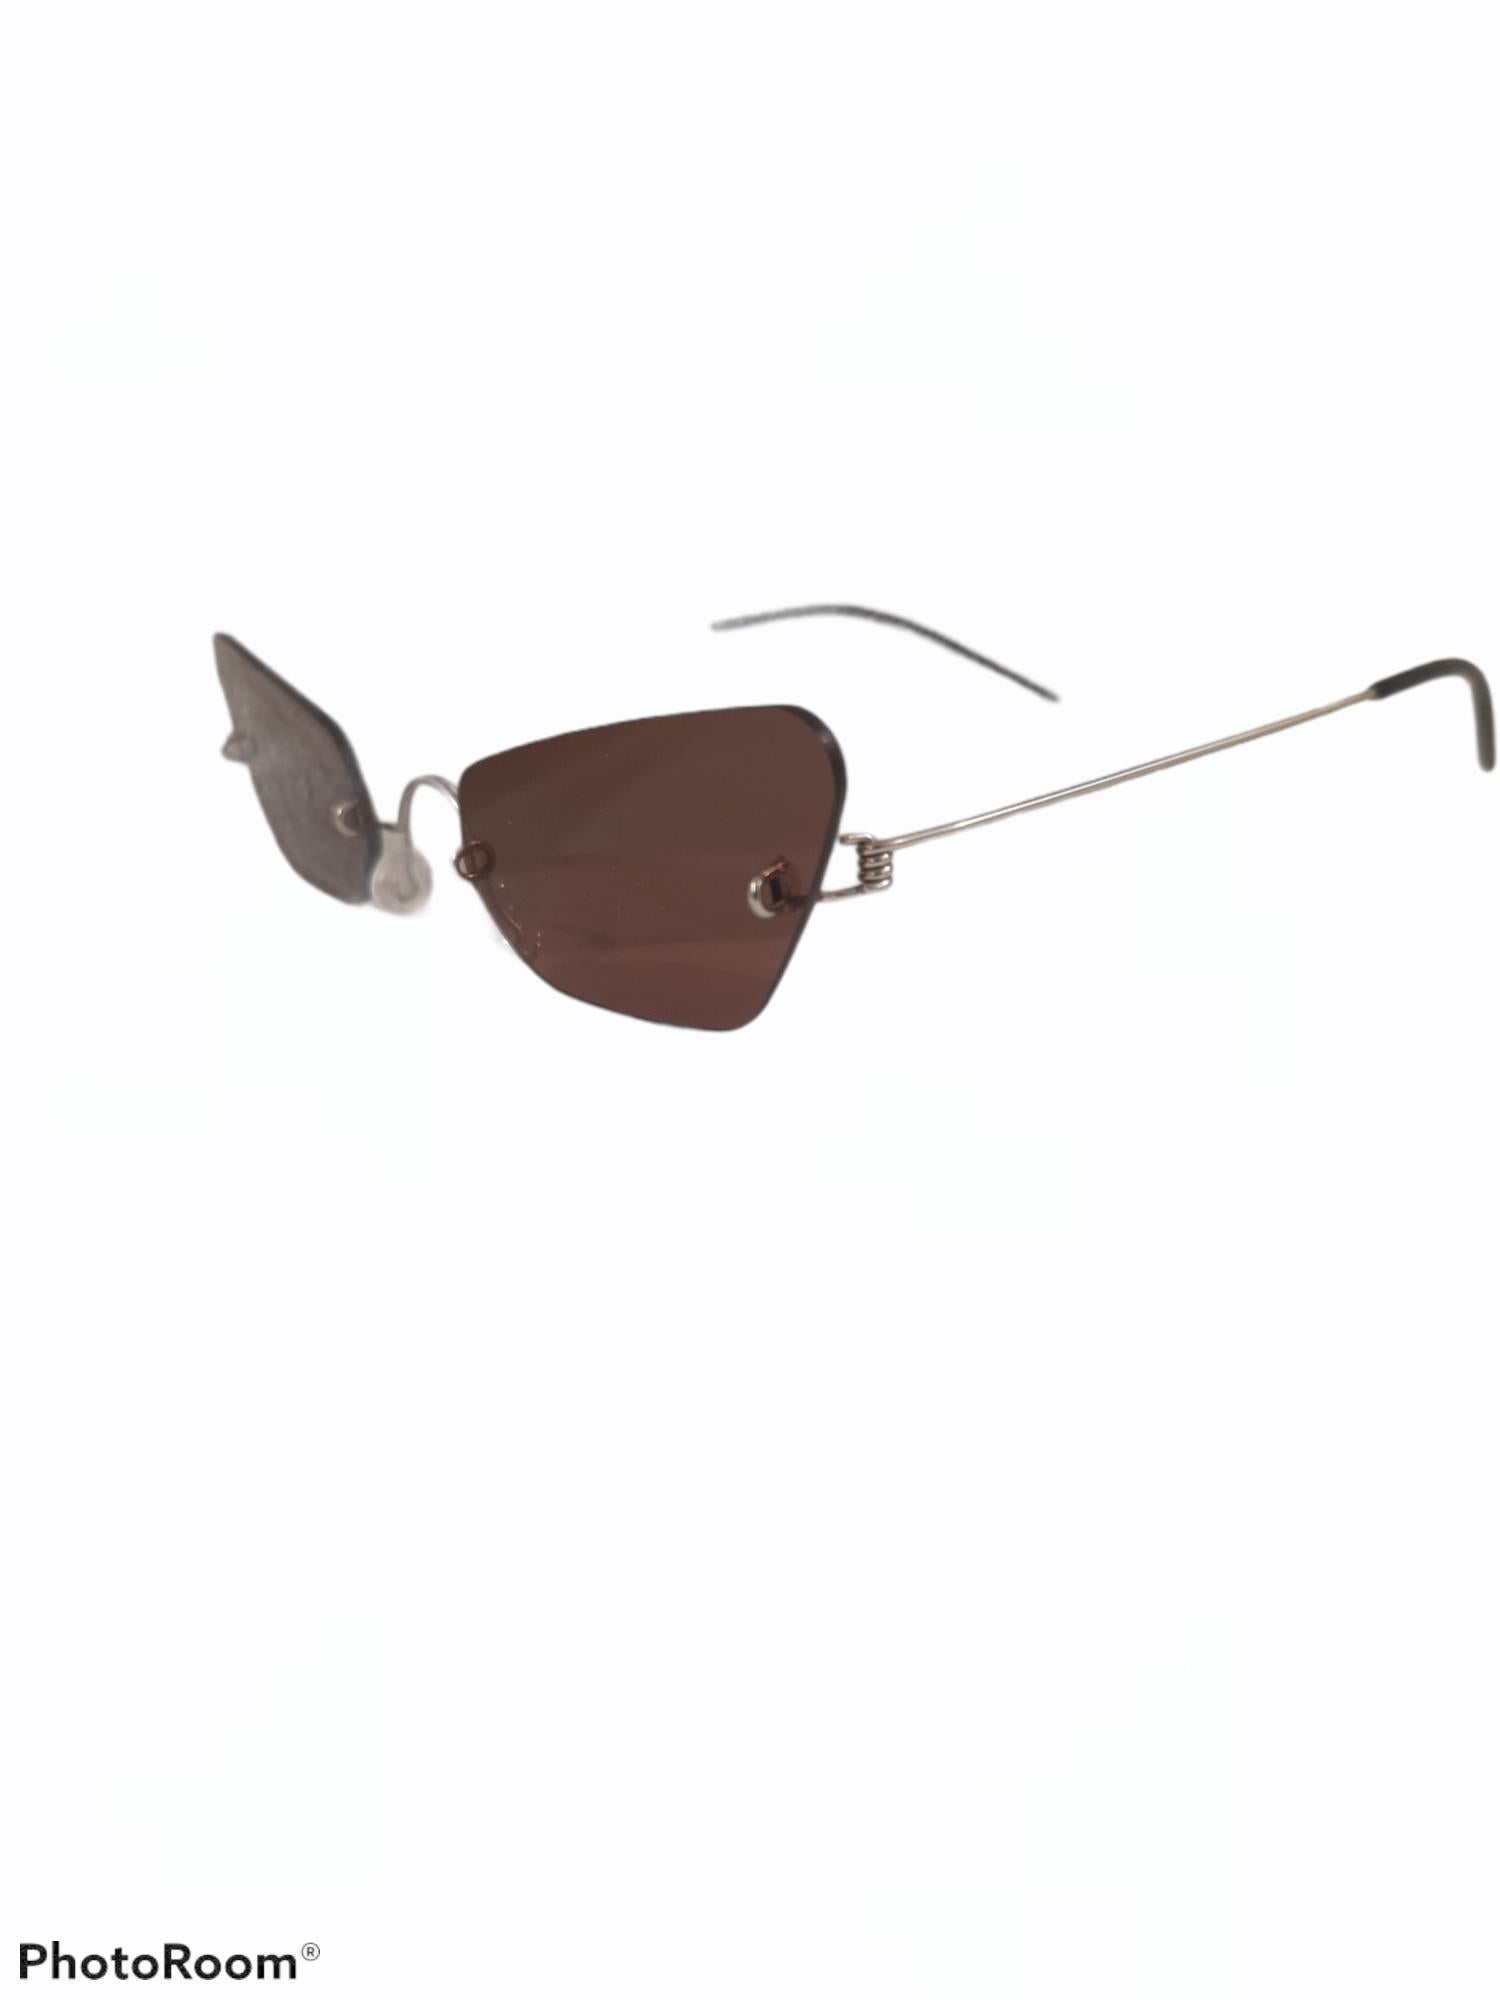 Women's or Men's Brown sunglasses NWOT